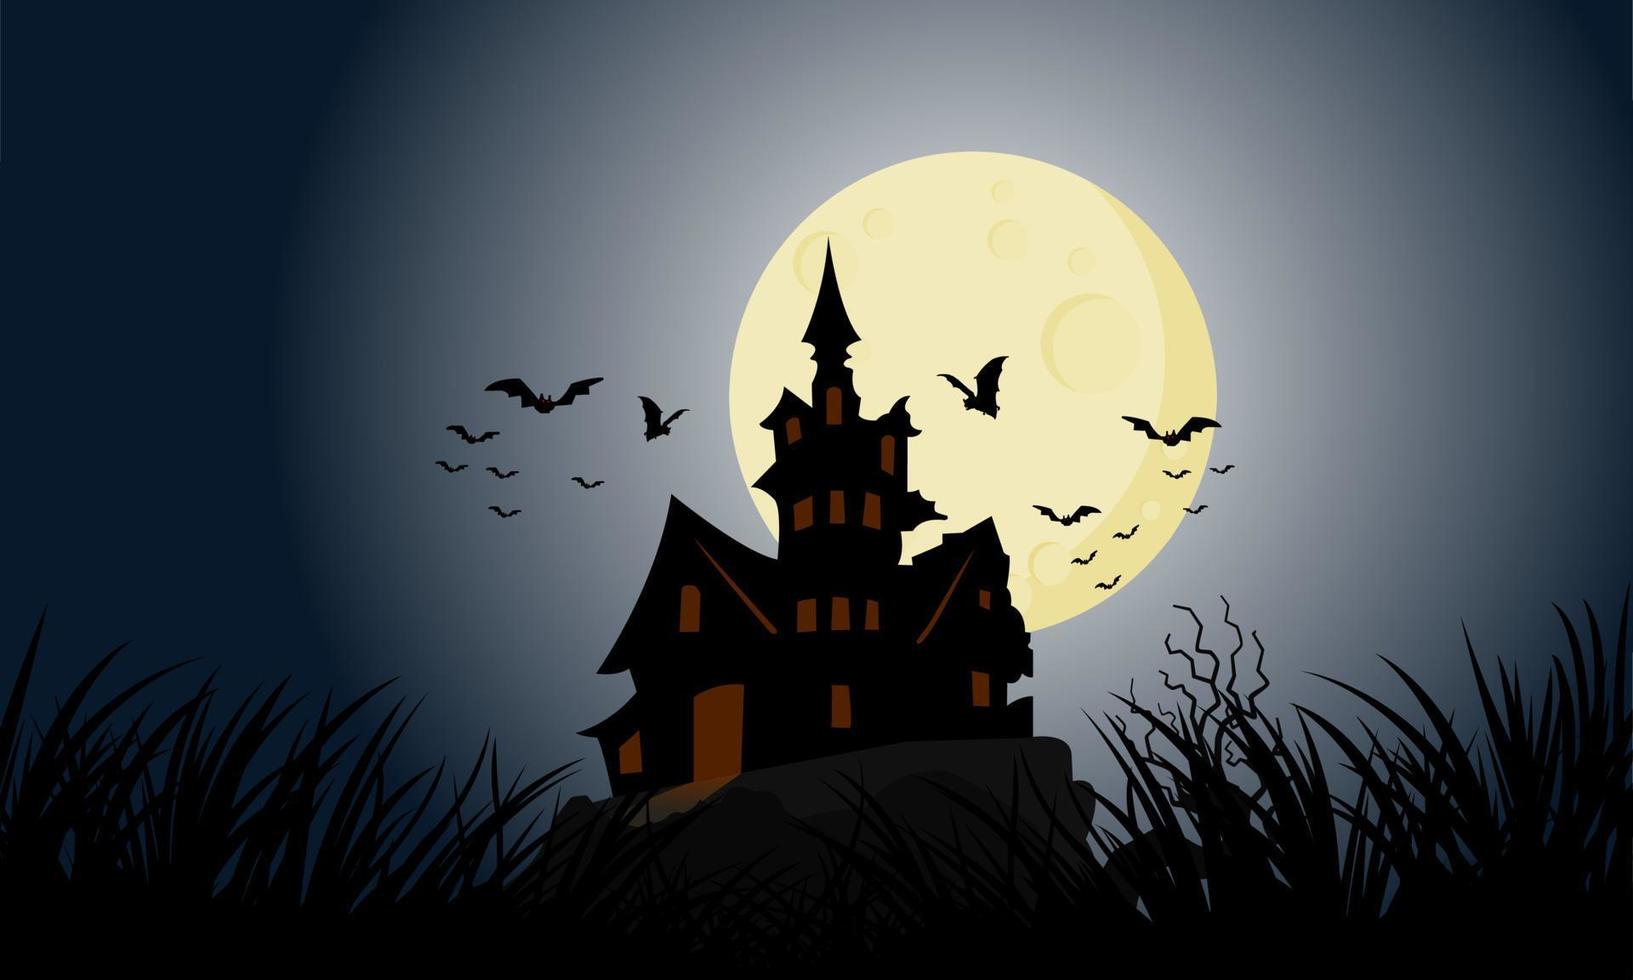 aterrorizante castelo escuro na noite de lua cheia de halloween. enxames de morcegos voam ao redor do castelo de Drácula que se eleva sobre as montanhas. vetor